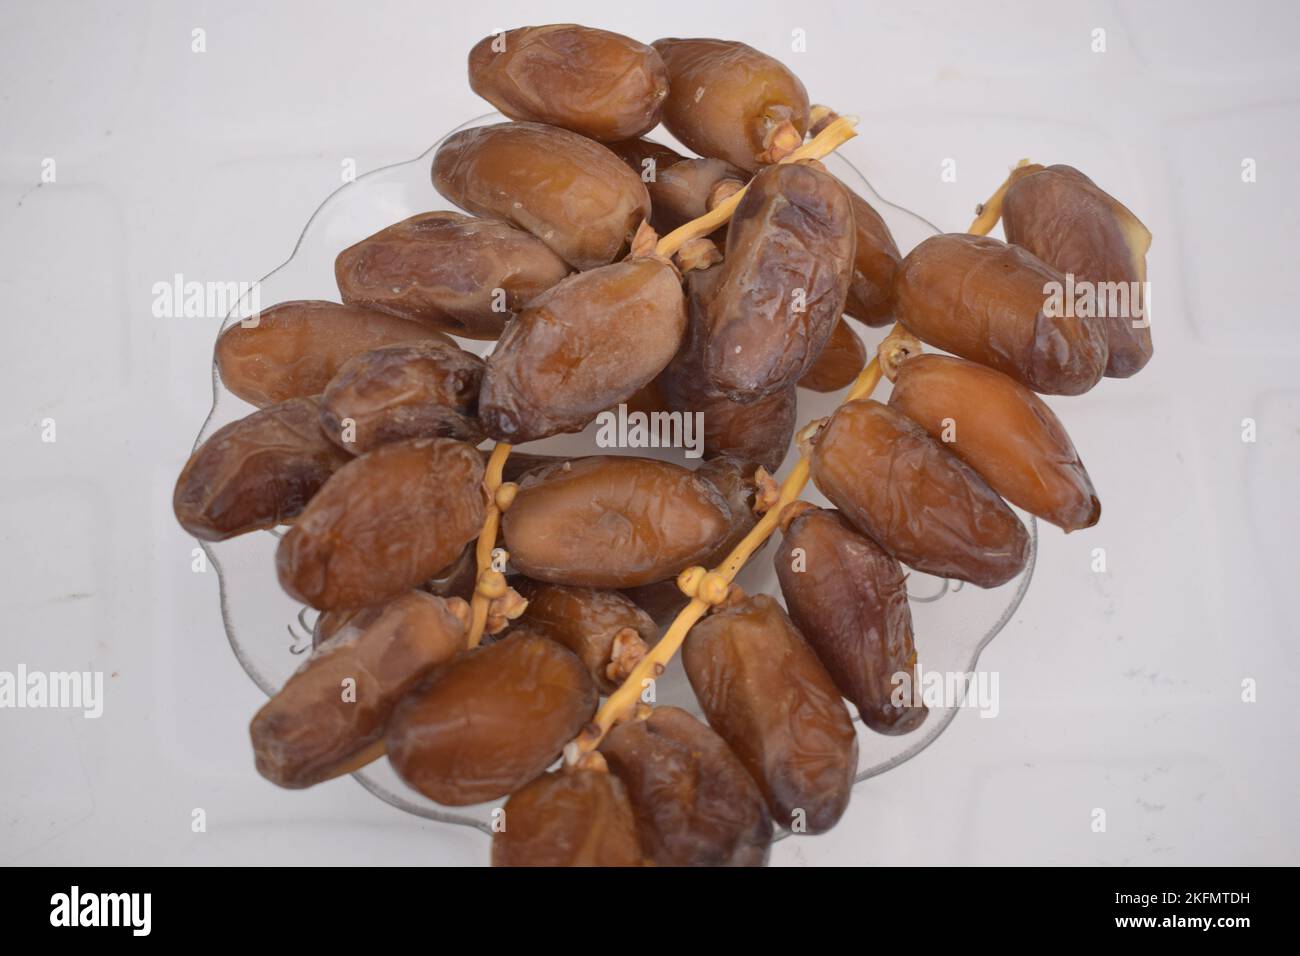 deglet nour dates originating from the oases in Algeria Stock Photo